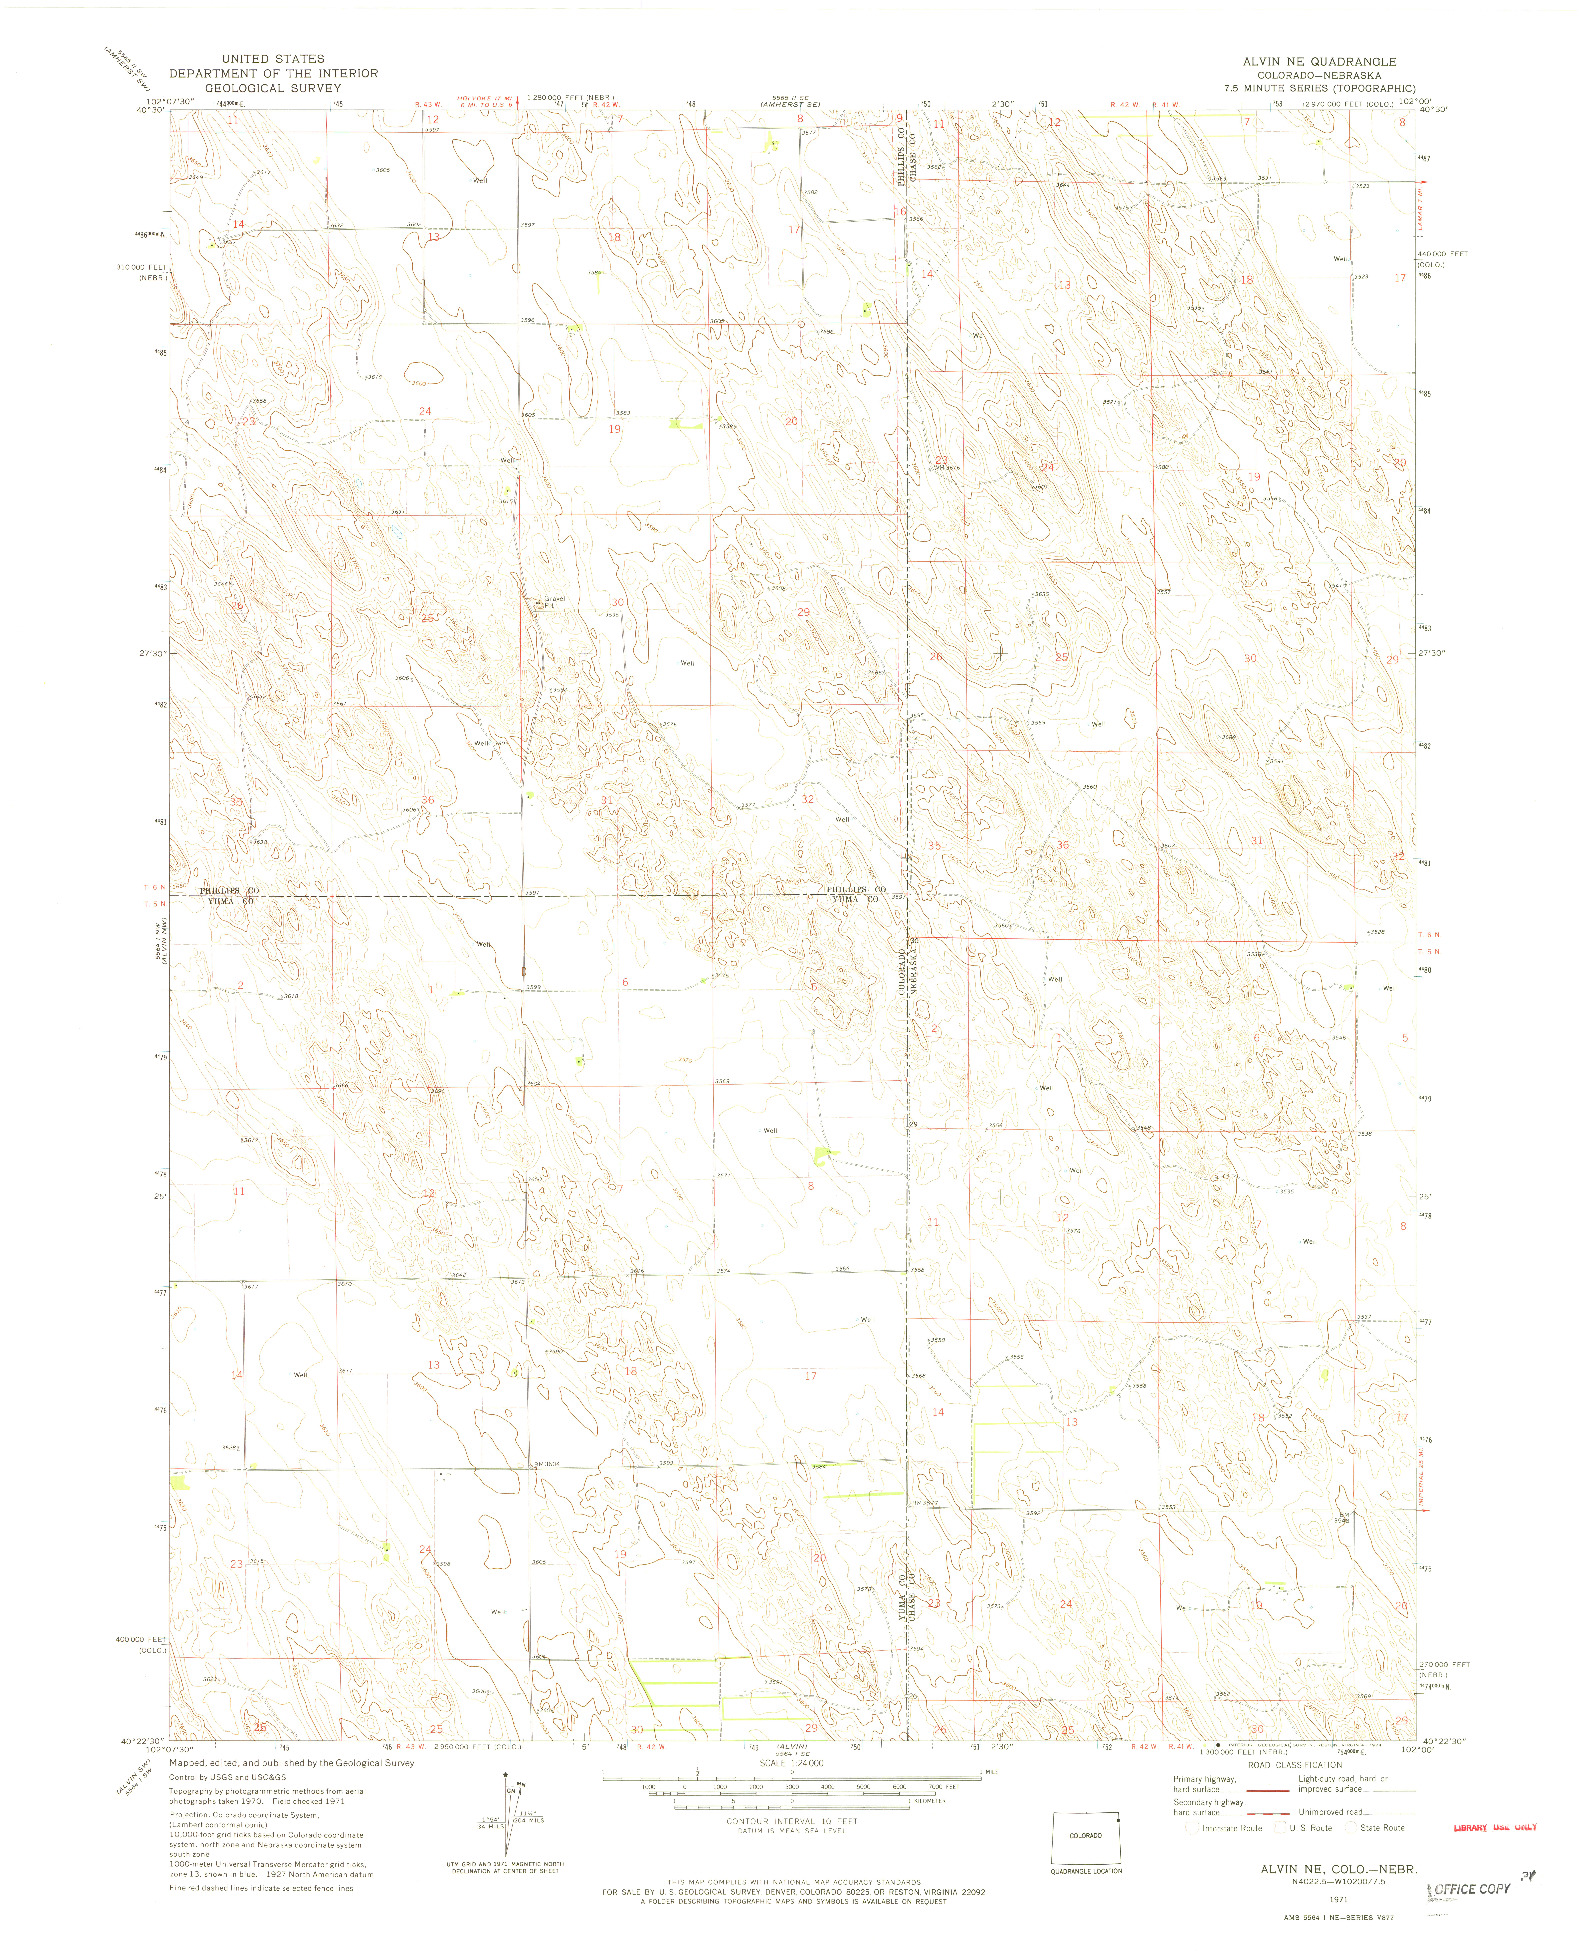 USGS 1:24000-SCALE QUADRANGLE FOR ALVIN NE, CO 1971